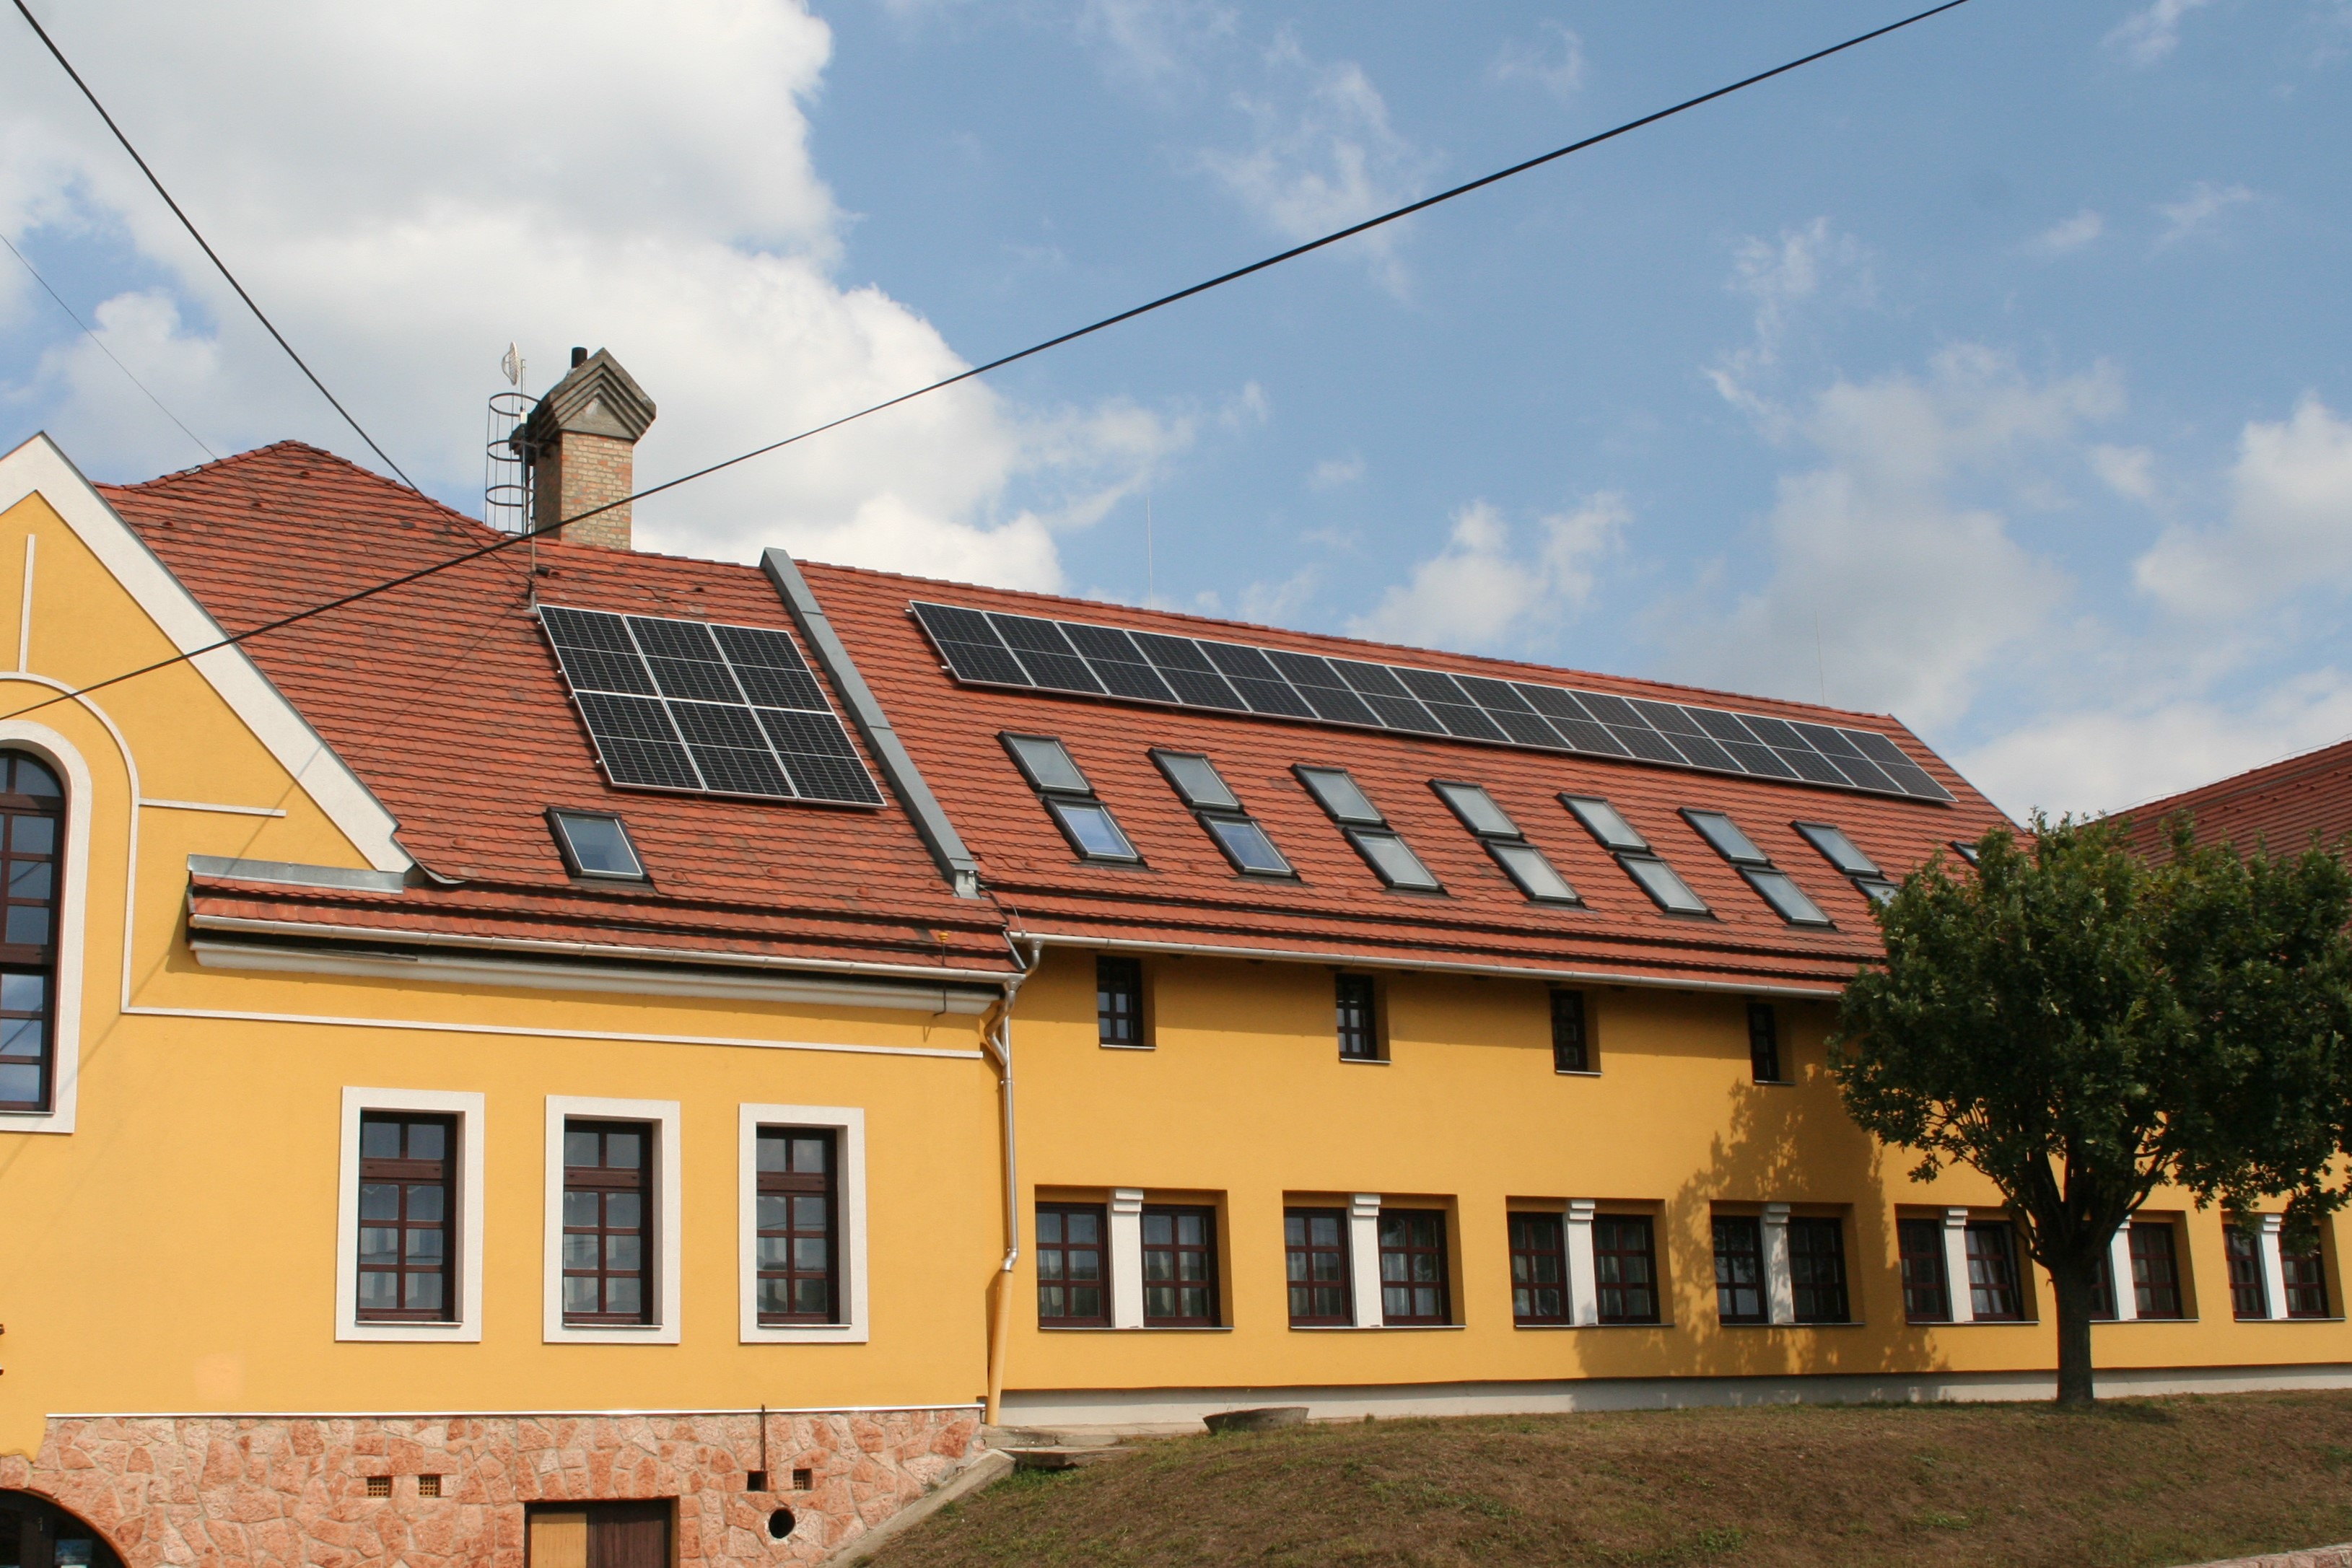 A napelemes rendszer az iskola homlokzata felől